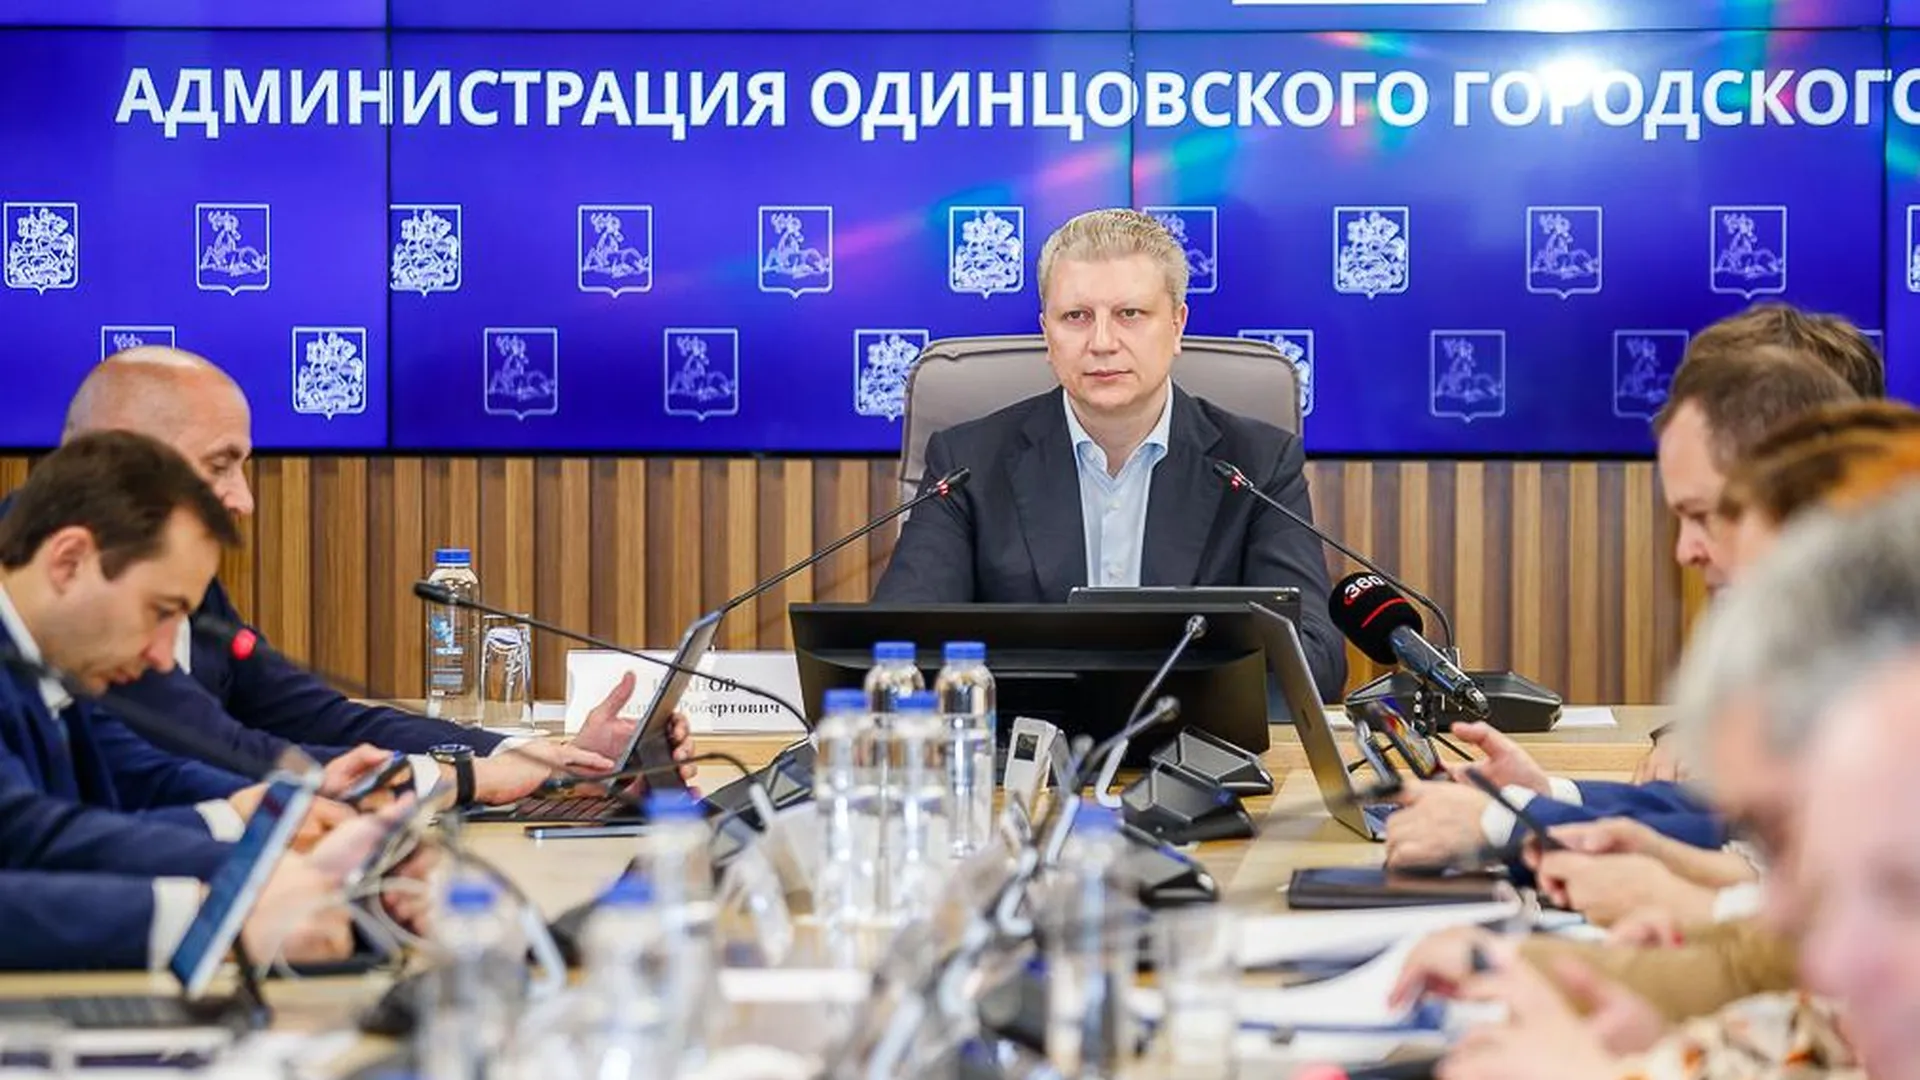 Глава Одинцовского городского округа провел встречу с жителями по актуальным вопросам